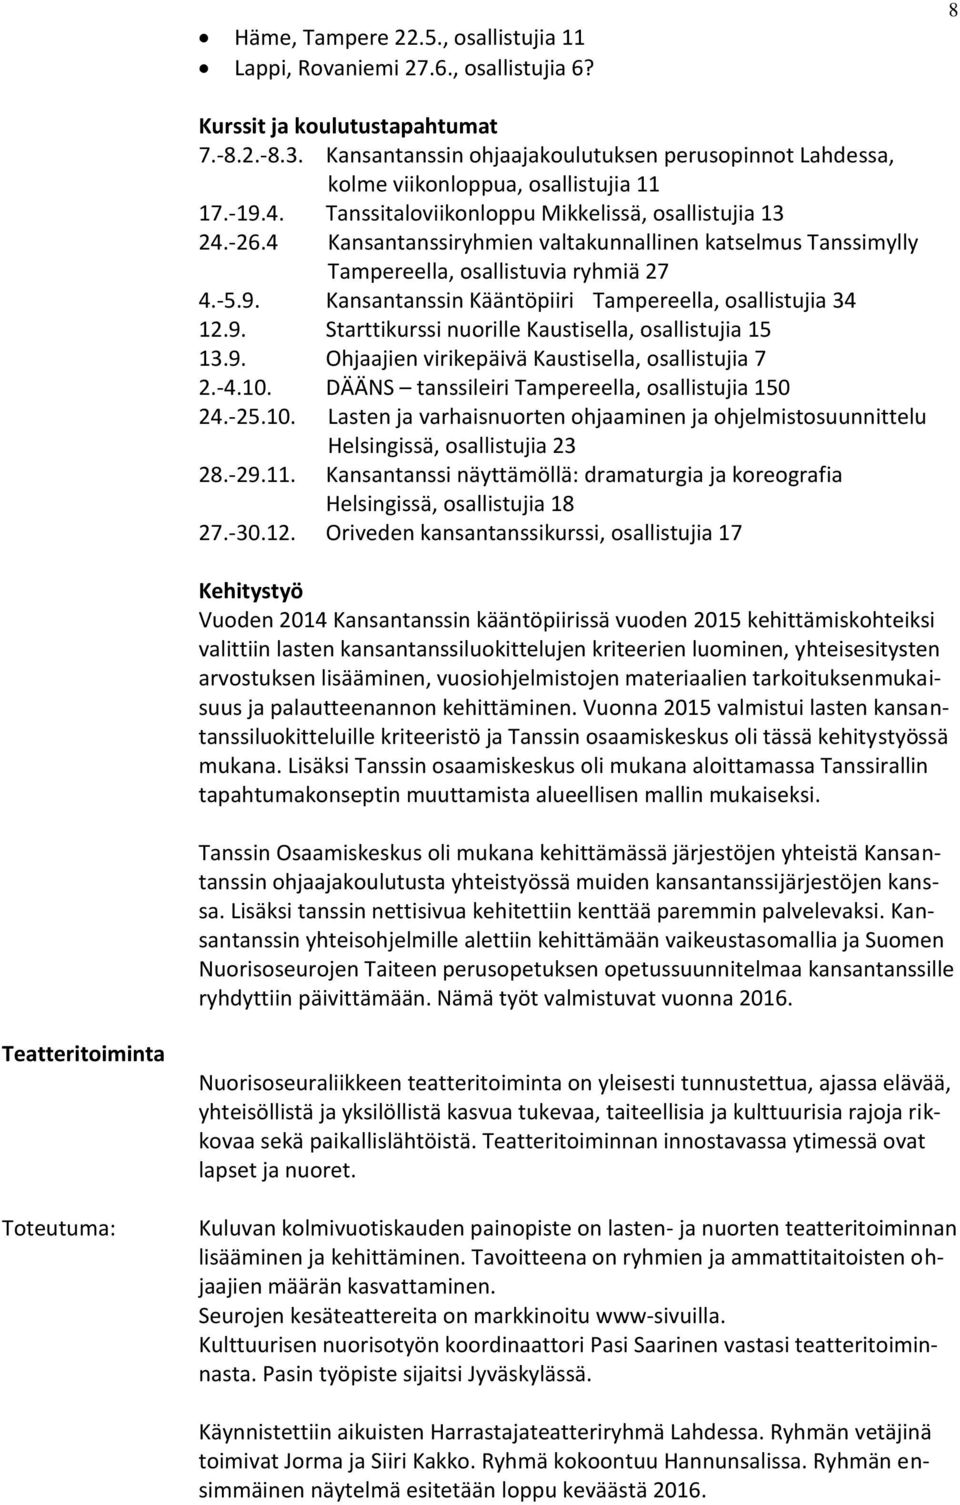 4 Kansantanssiryhmien valtakunnallinen katselmus Tanssimylly Tampereella, osallistuvia ryhmiä 27 4.-5.9. Kansantanssin Kääntöpiiri Tampereella, osallistujia 34 12.9. Starttikurssi nuorille Kaustisella, osallistujia 15 13.